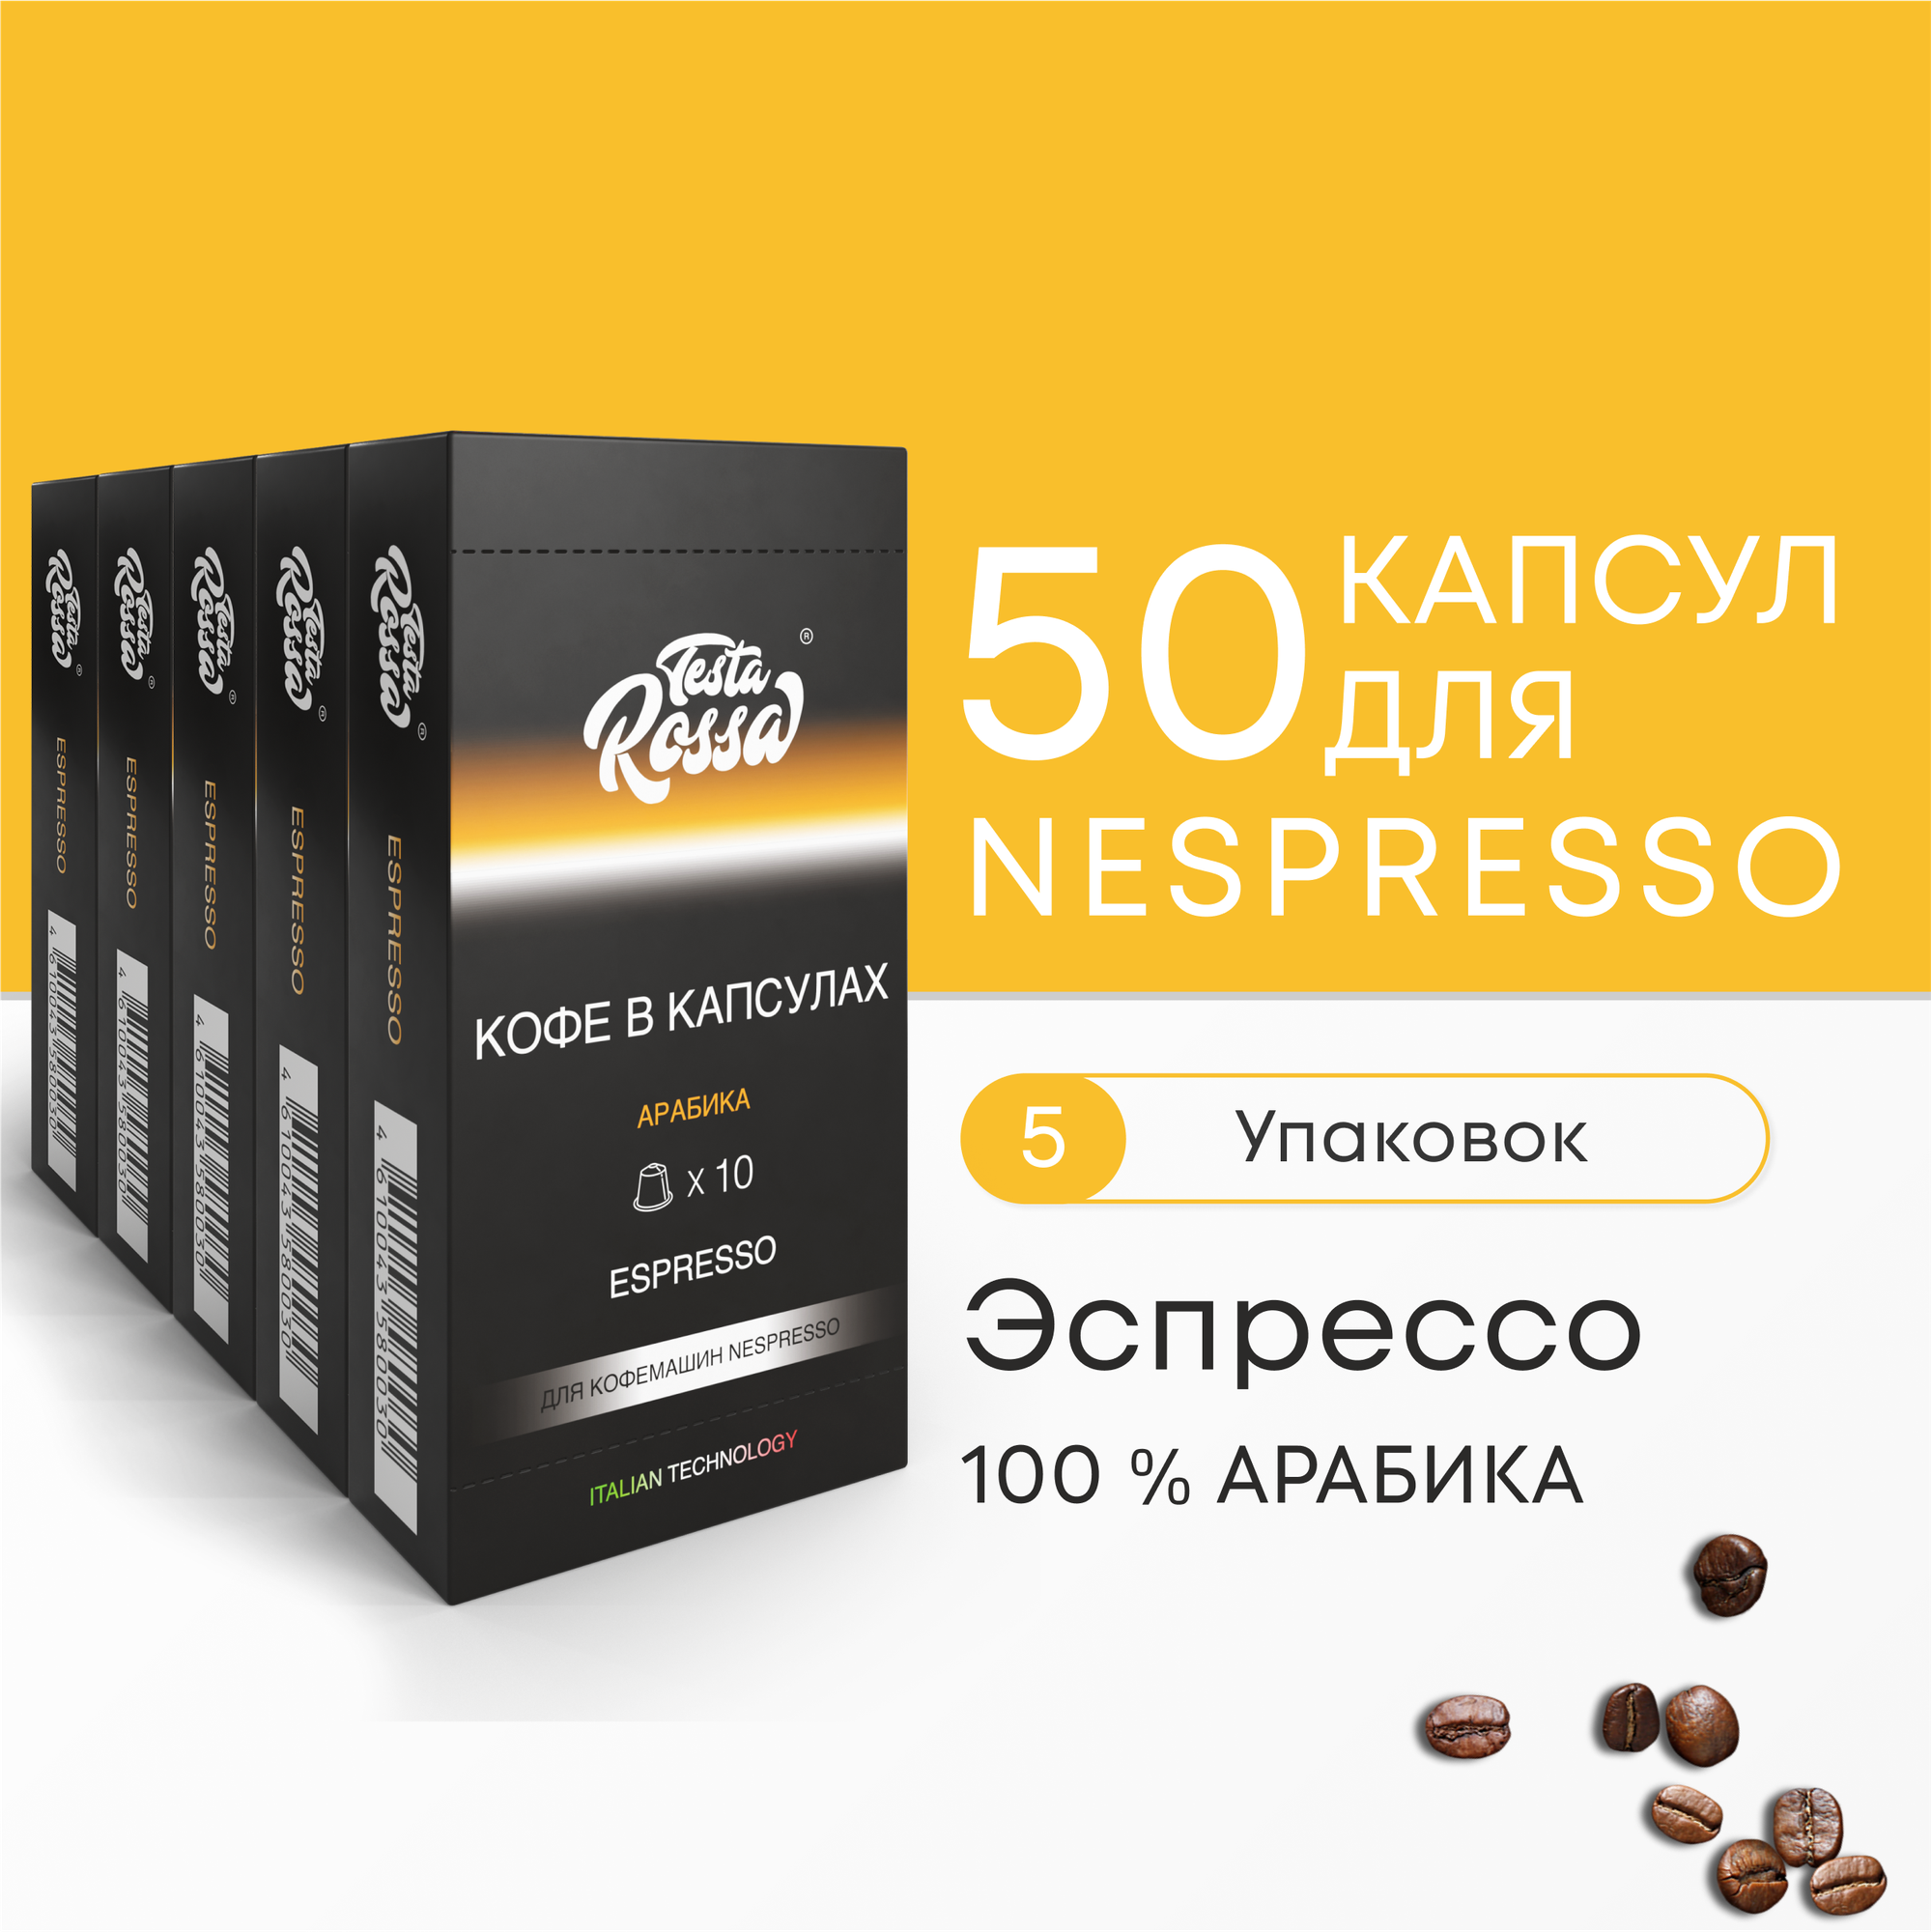 Эспрессо Арабика 100% - Капсулы Testa Rossa - 500 шт набор кофе в капсулах неспрессо для кофемашины NESPRESSO